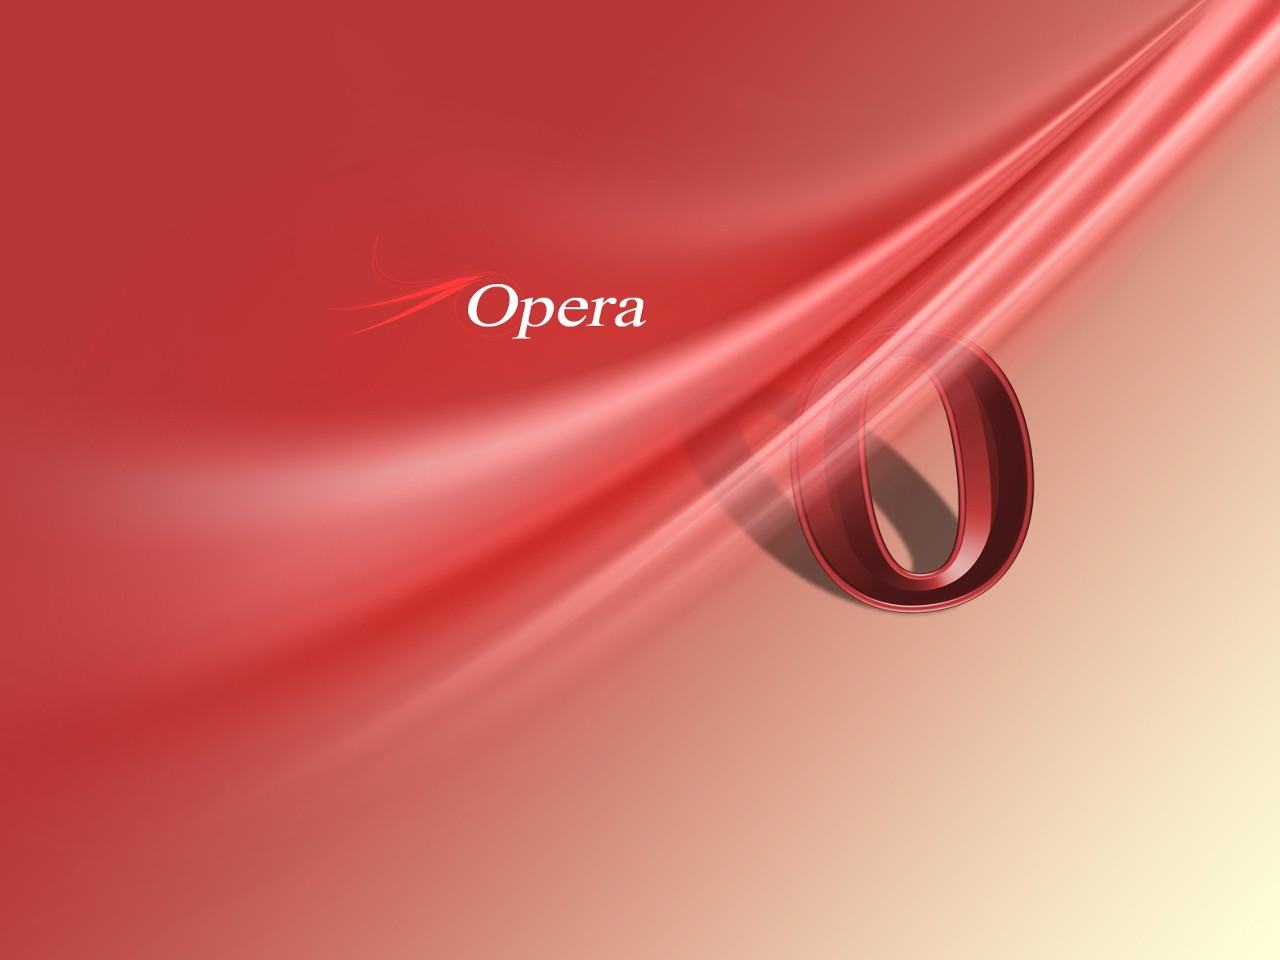 Obrázek Opera wallpaper 01